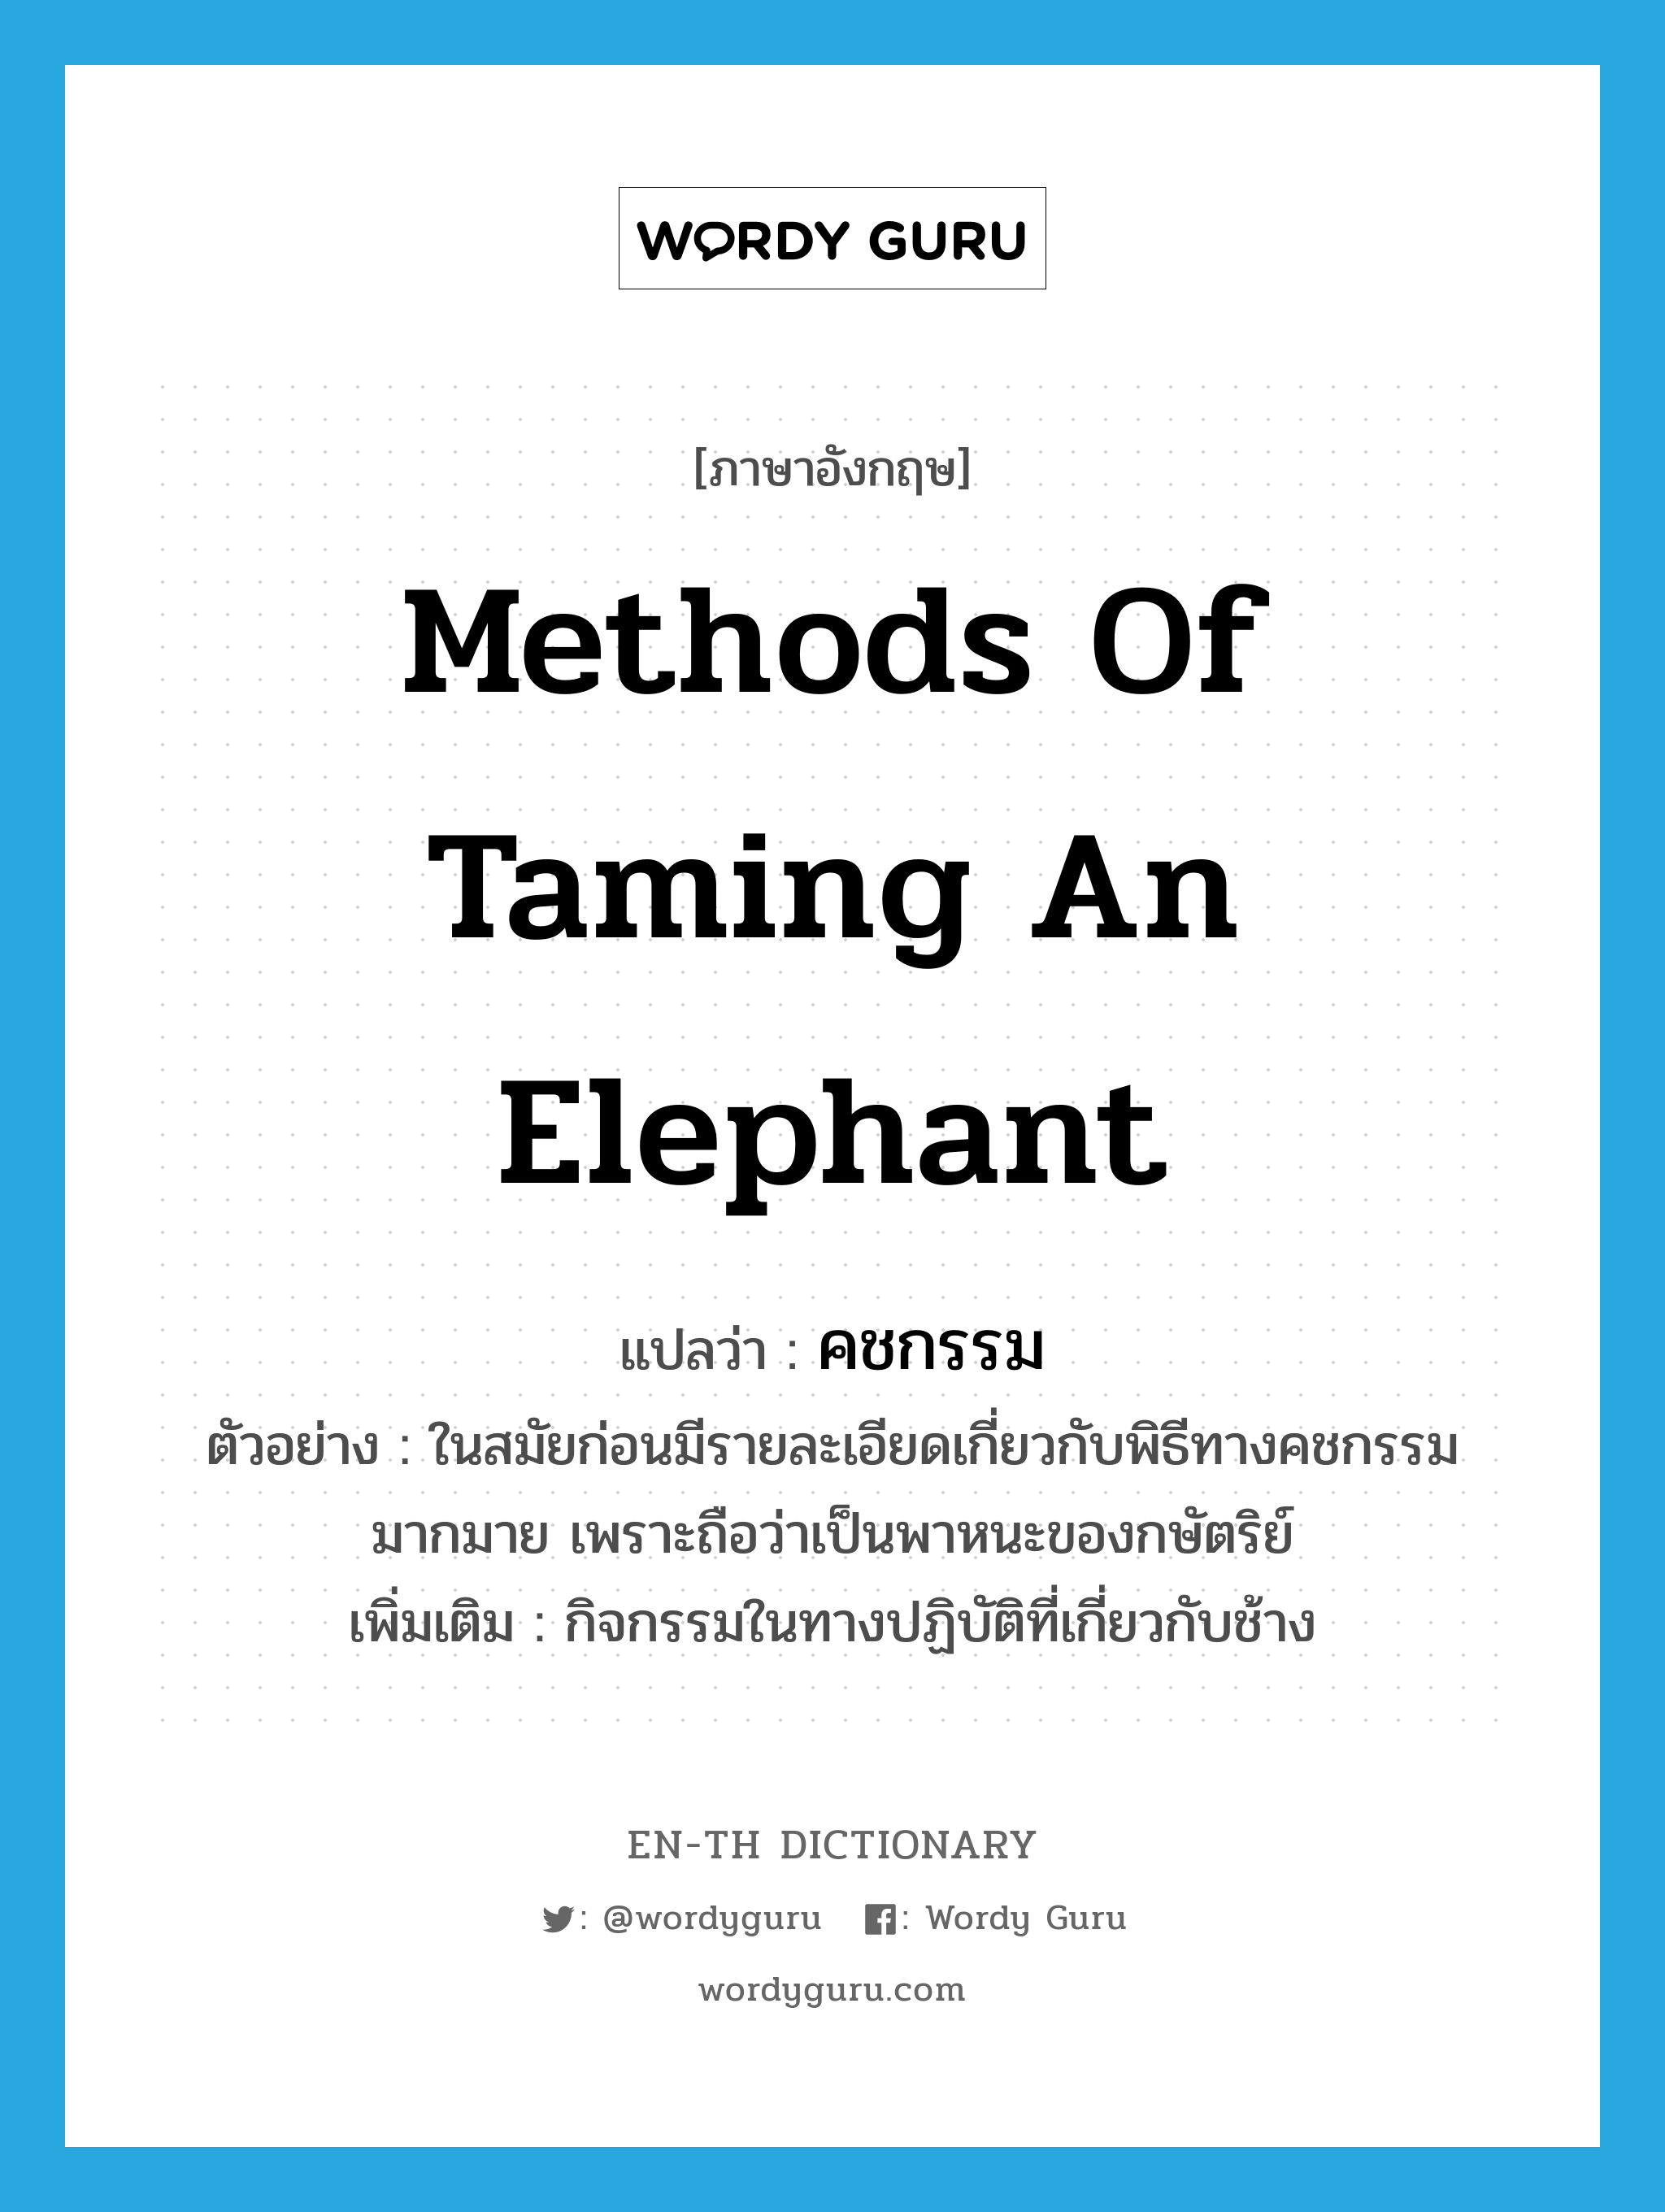 คชกรรม ภาษาอังกฤษ?, คำศัพท์ภาษาอังกฤษ คชกรรม แปลว่า methods of taming an elephant ประเภท N ตัวอย่าง ในสมัยก่อนมีรายละเอียดเกี่ยวกับพิธีทางคชกรรมมากมาย เพราะถือว่าเป็นพาหนะของกษัตริย์ เพิ่มเติม กิจกรรมในทางปฏิบัติที่เกี่ยวกับช้าง หมวด N